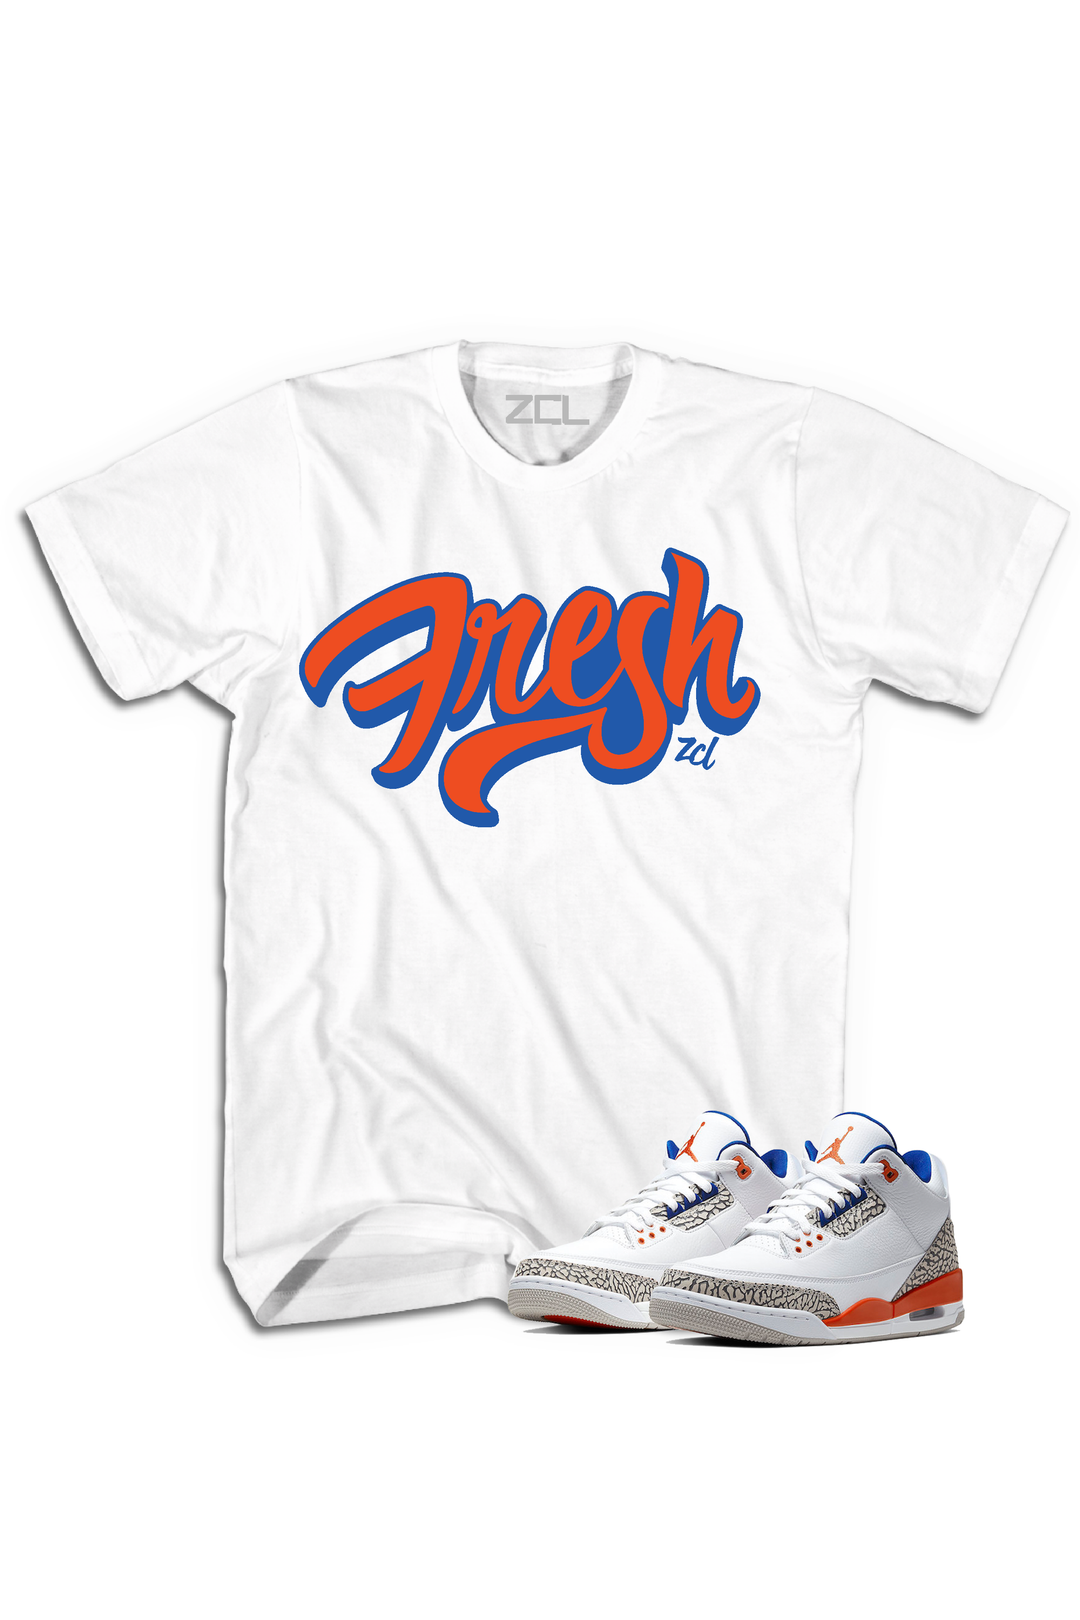 Air Jordan 3 "Fresh" Tee Knicks Rival - Zamage